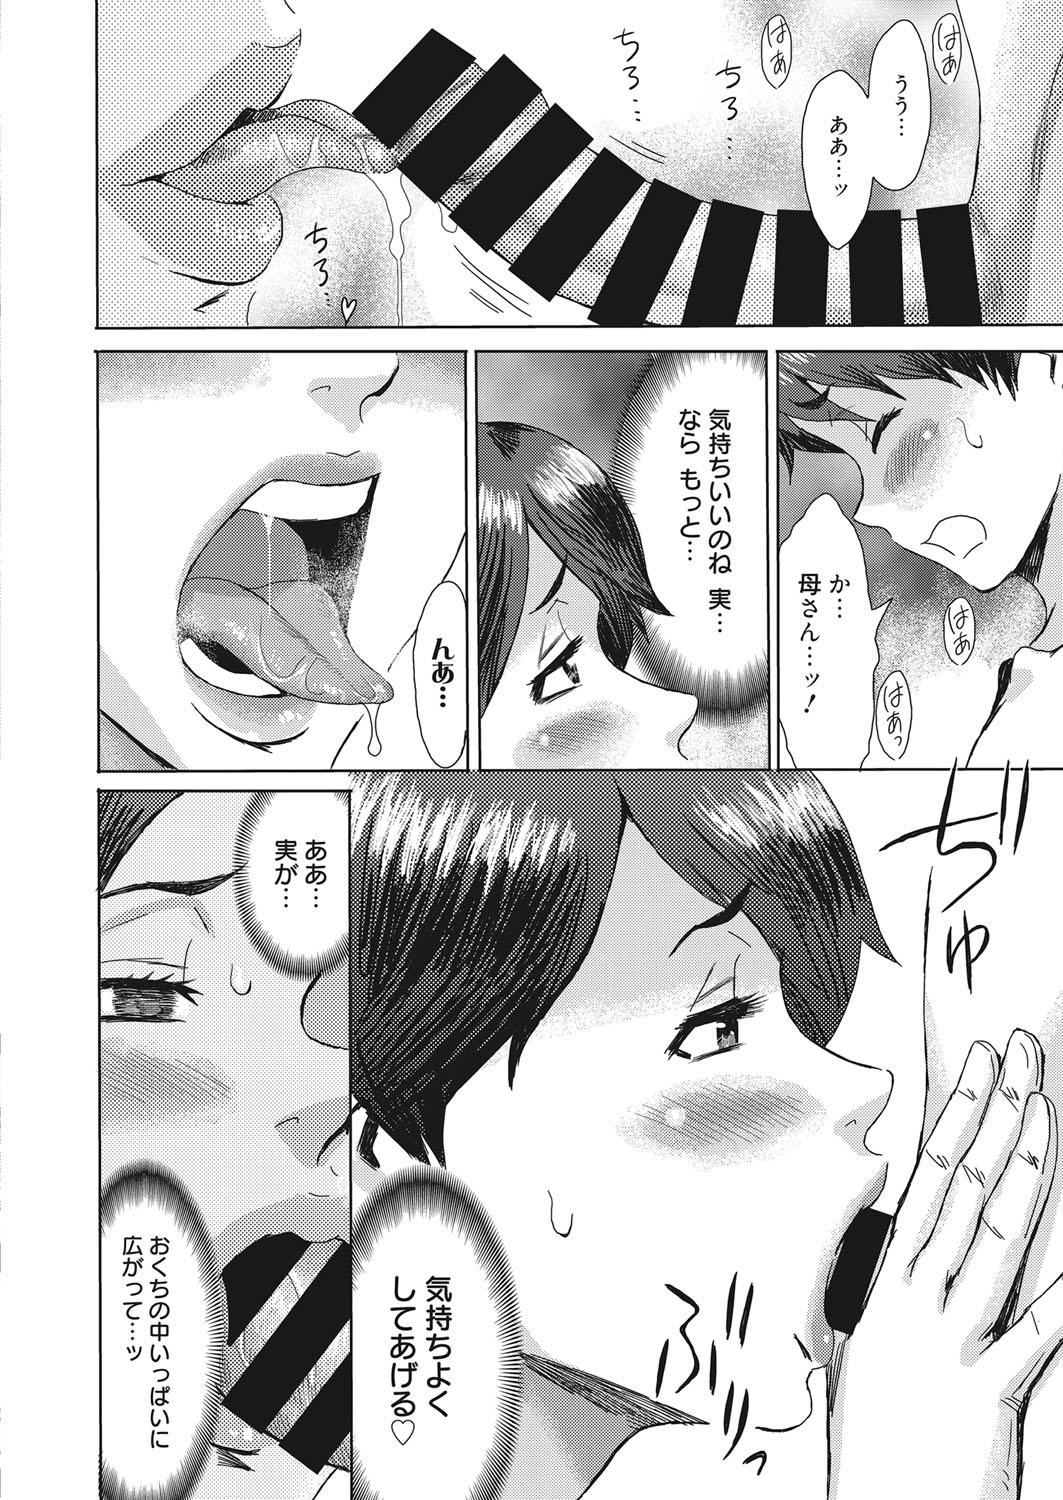 Pussylick Web Manga Bangaichi Vol. 15 Gozo - Page 11